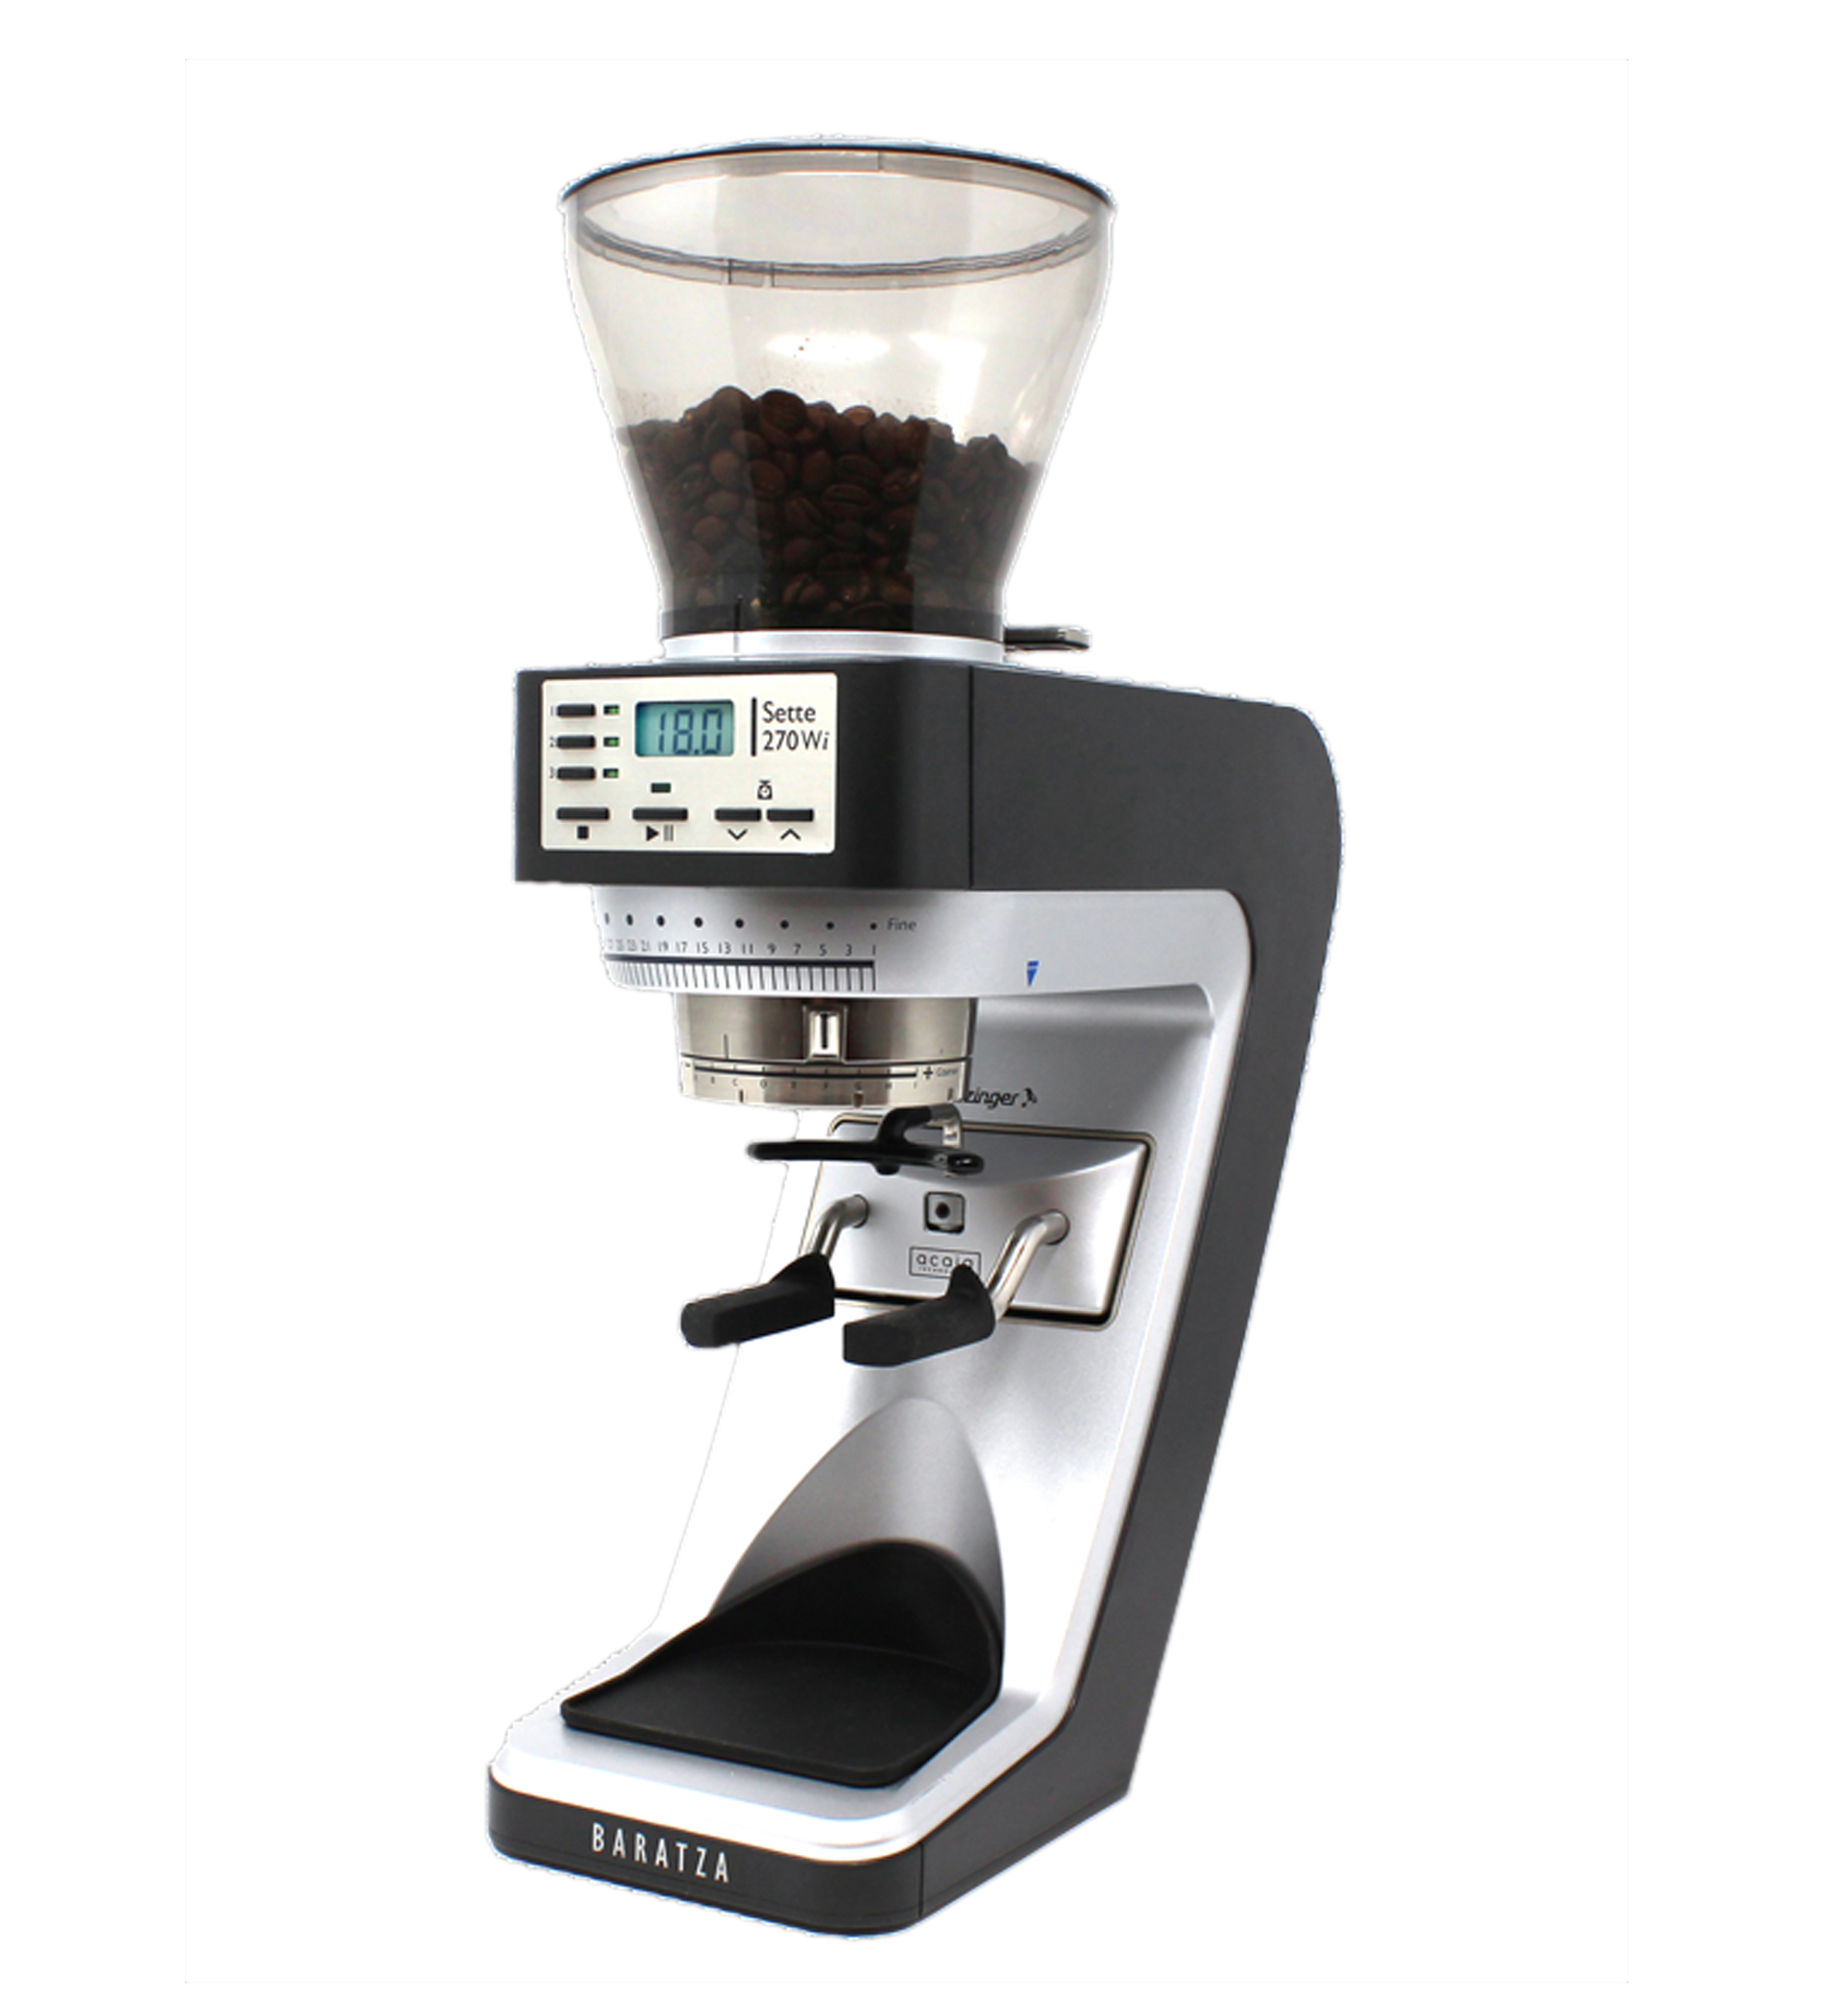 11270W Sette 270W 120v Coffee Grinder